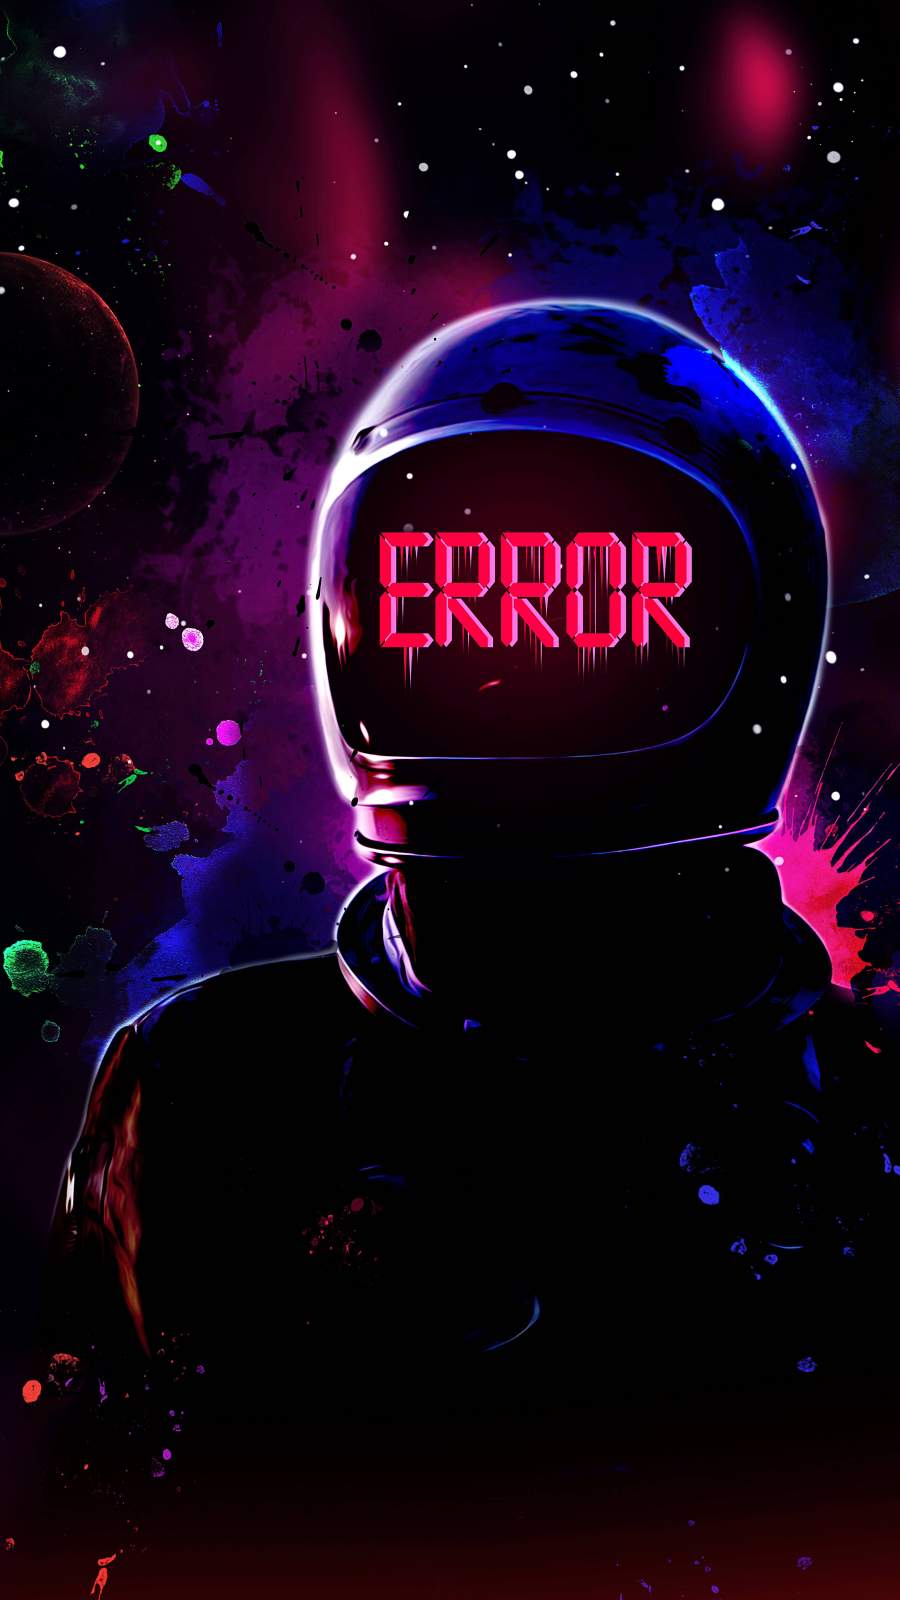 Astronaut Error iPhone Wallpaper  iPhone Wallpapers